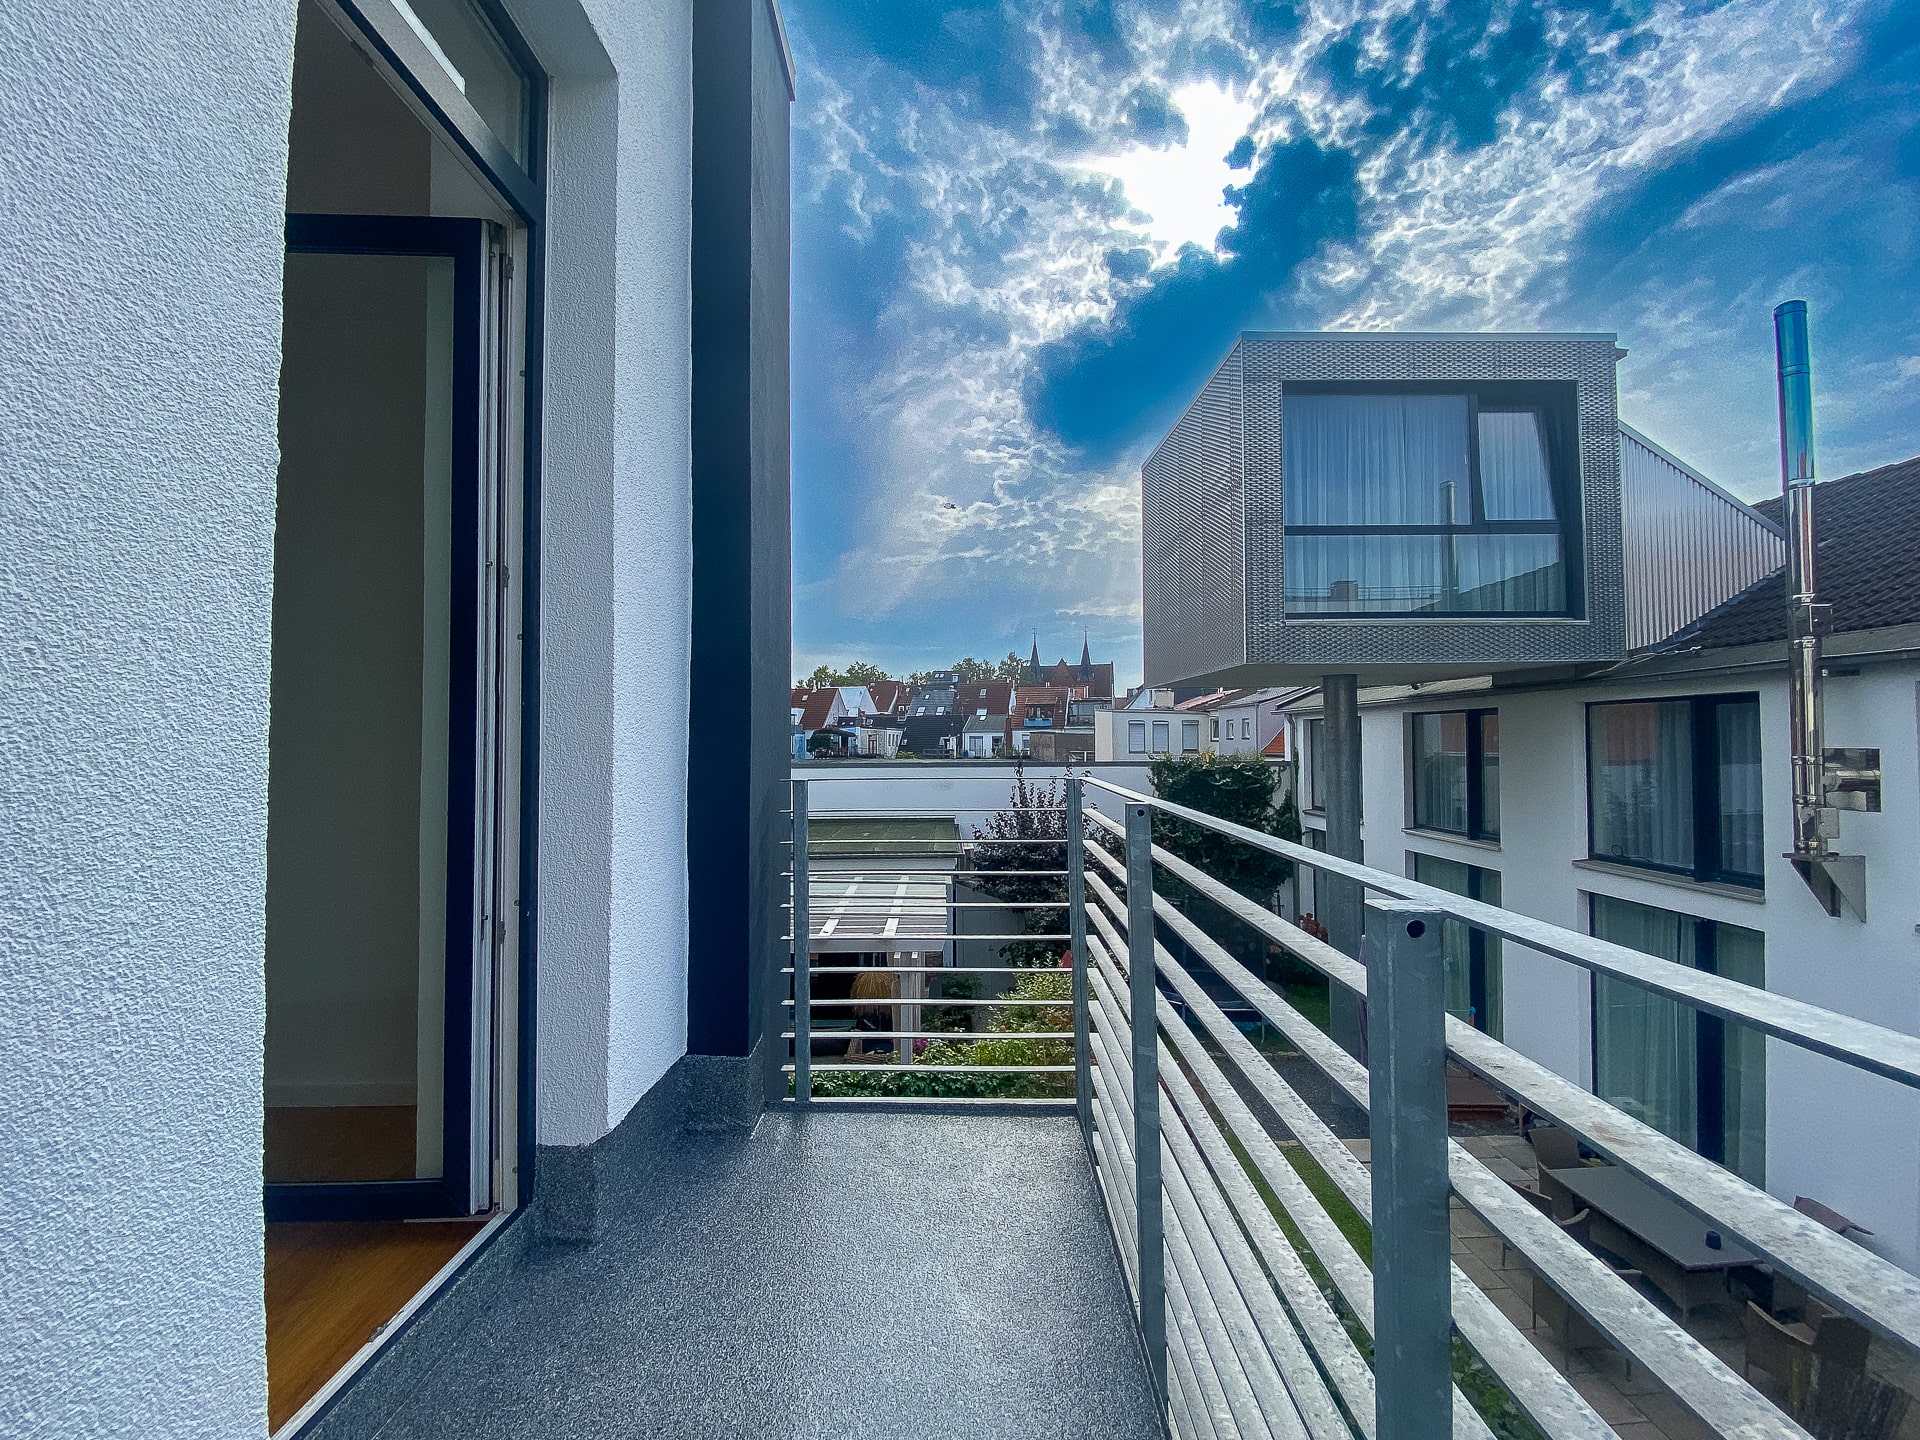 Exklusives Architektenhaus im Fesenfeld, perfekt präsentiert von Ihrem Immobilienmakler in Bremen.